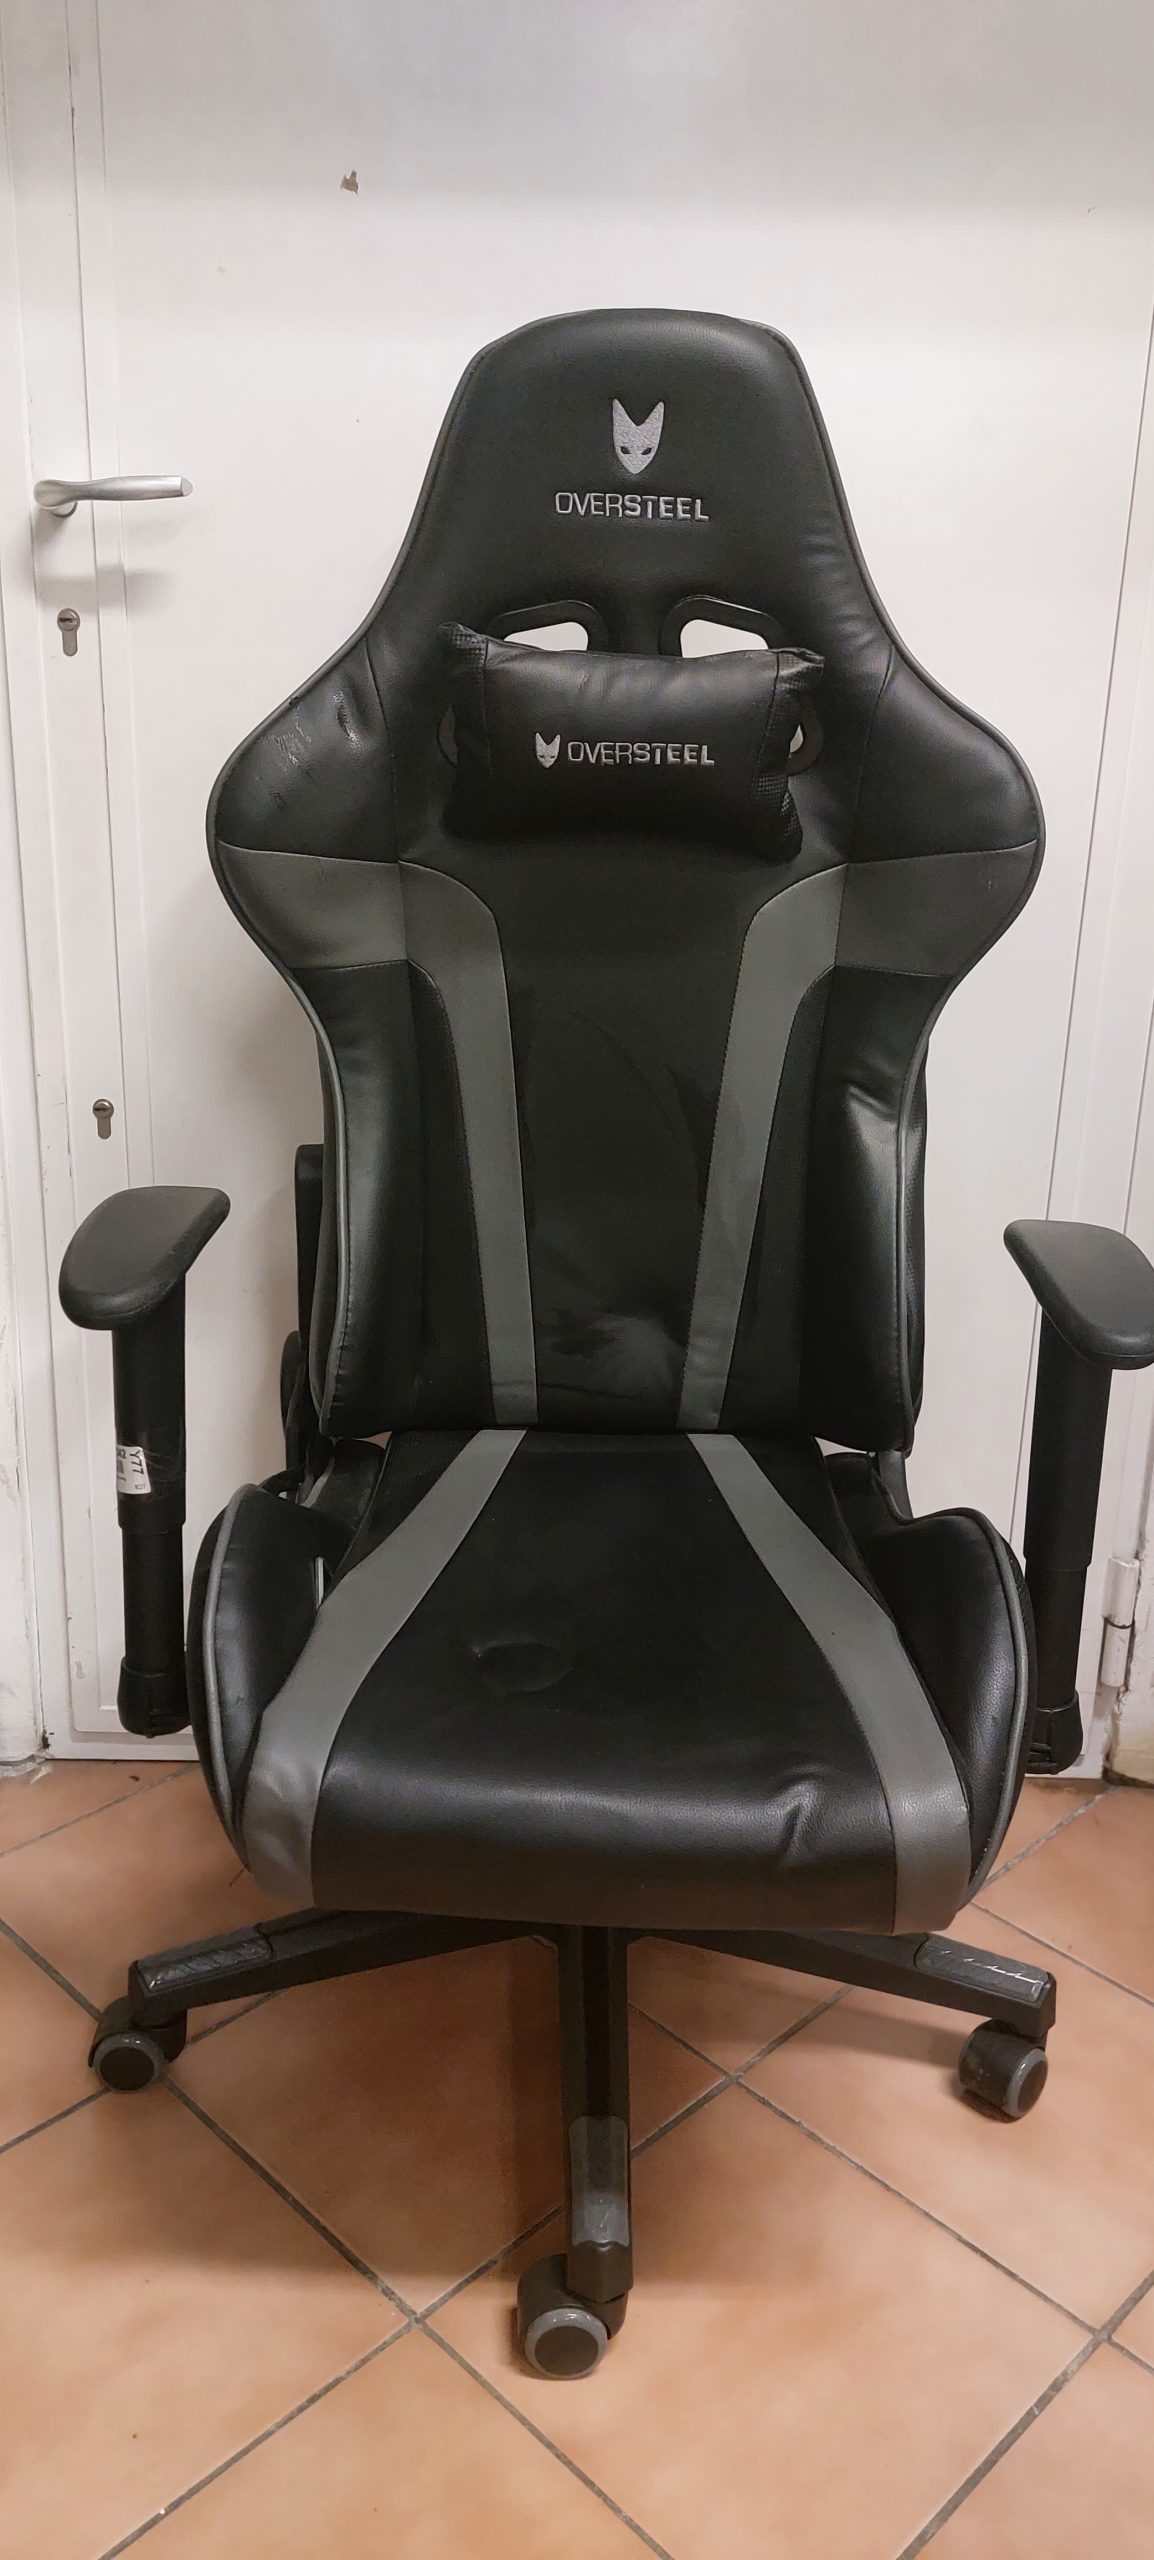 Oversteel Ultimet fekete szürke Gamer- irodai szék, kiemelt kép